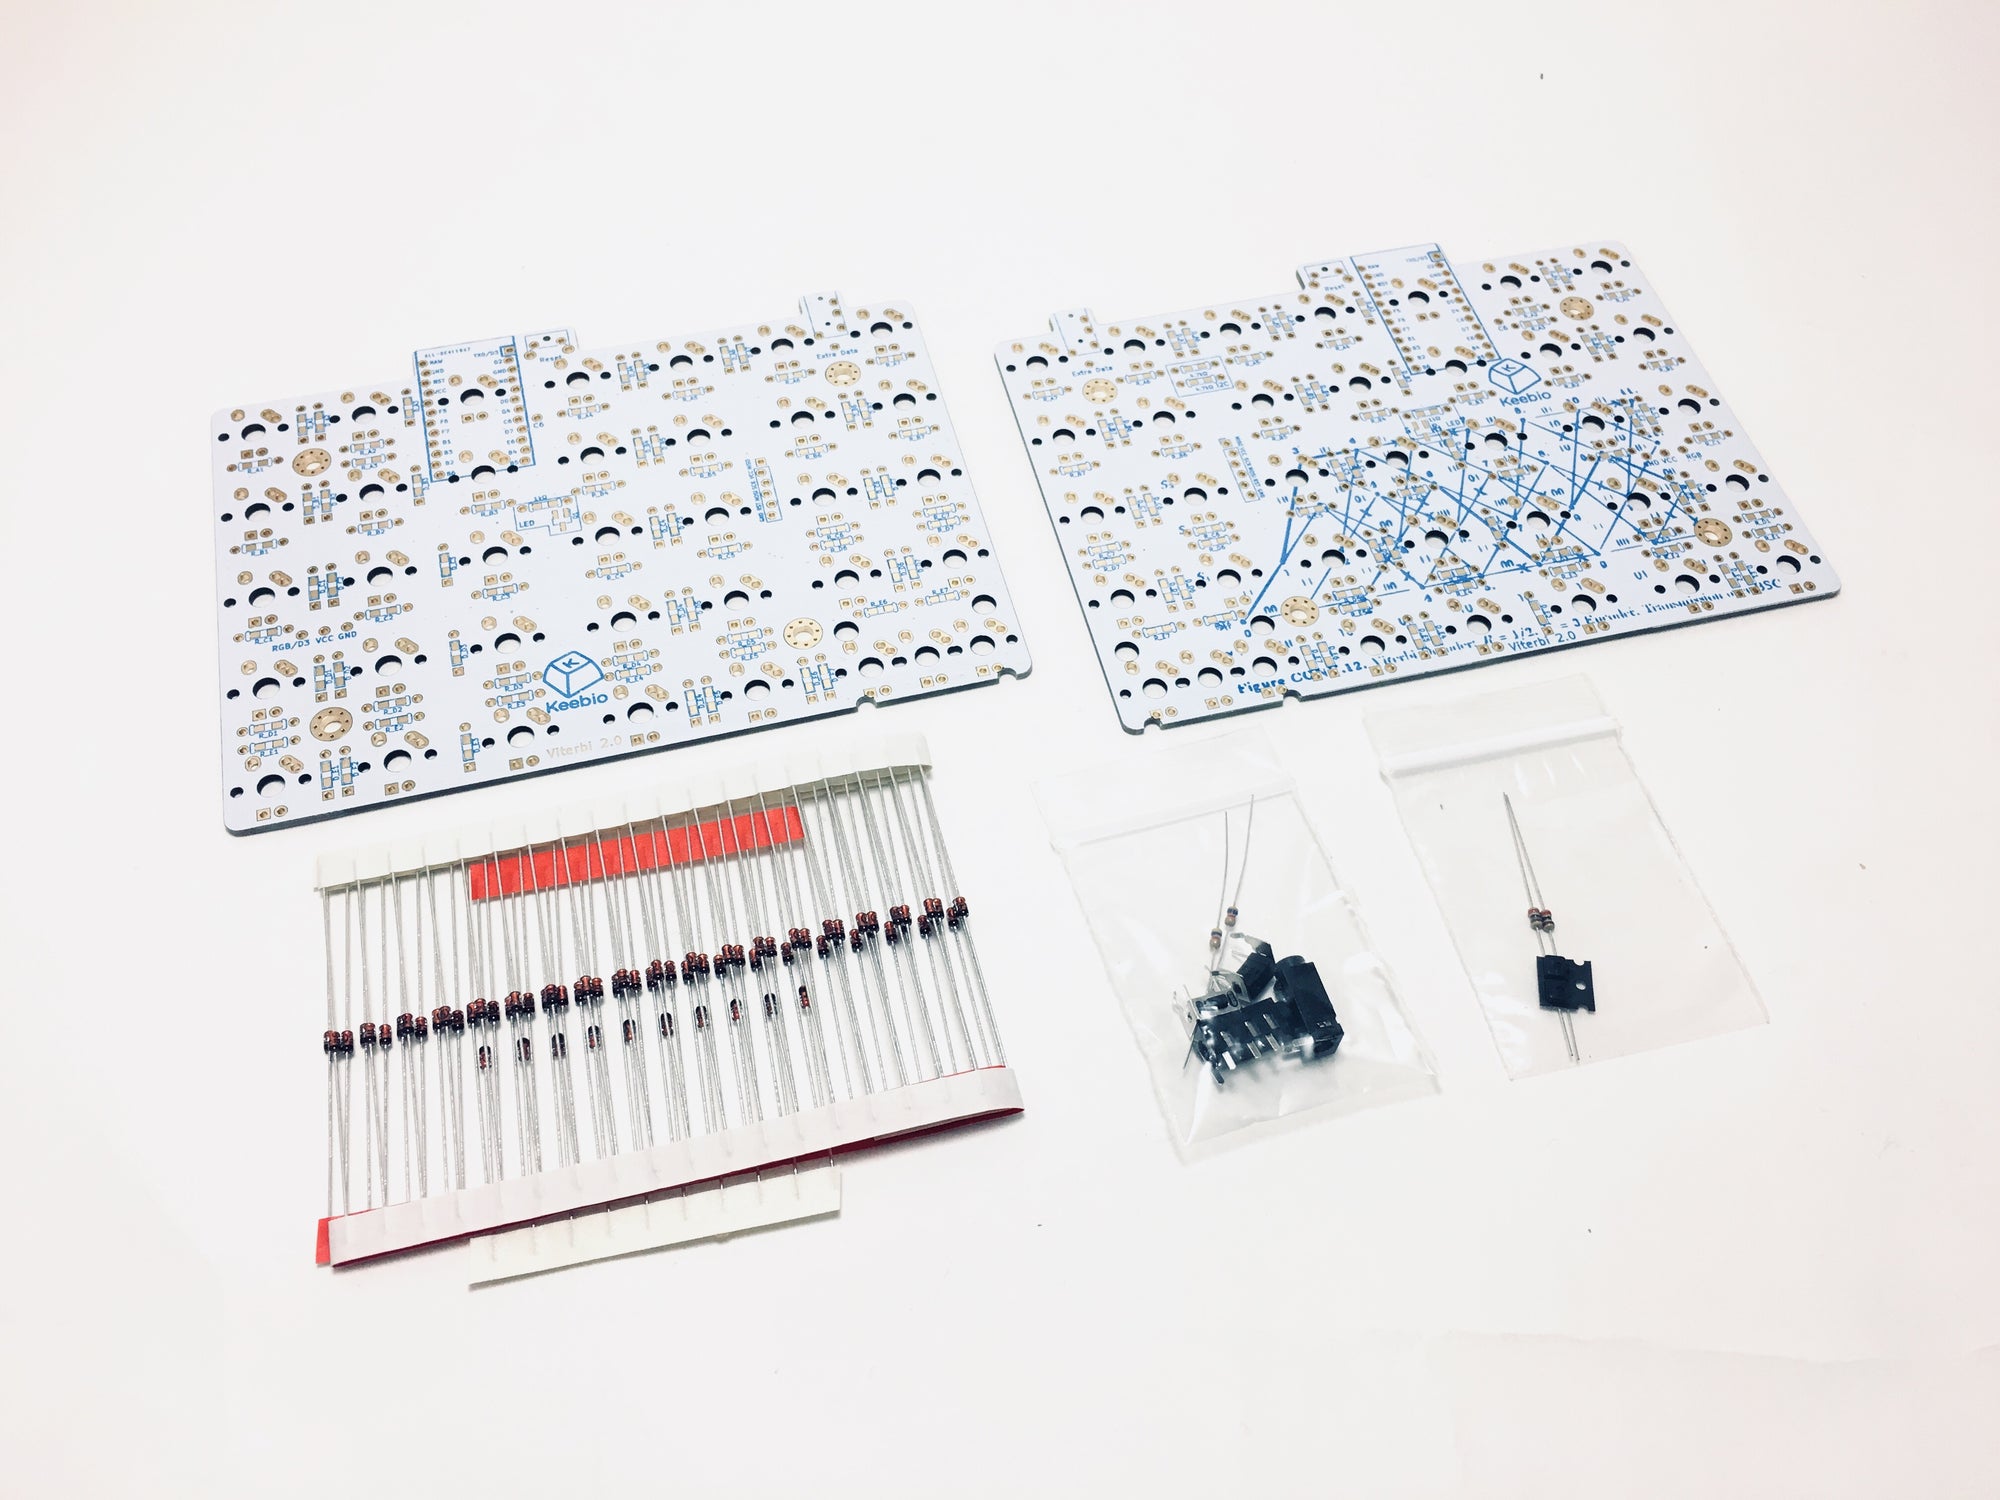 Viterbi Keyboard - 5x7 70% Split Ortholinear PCB Kit